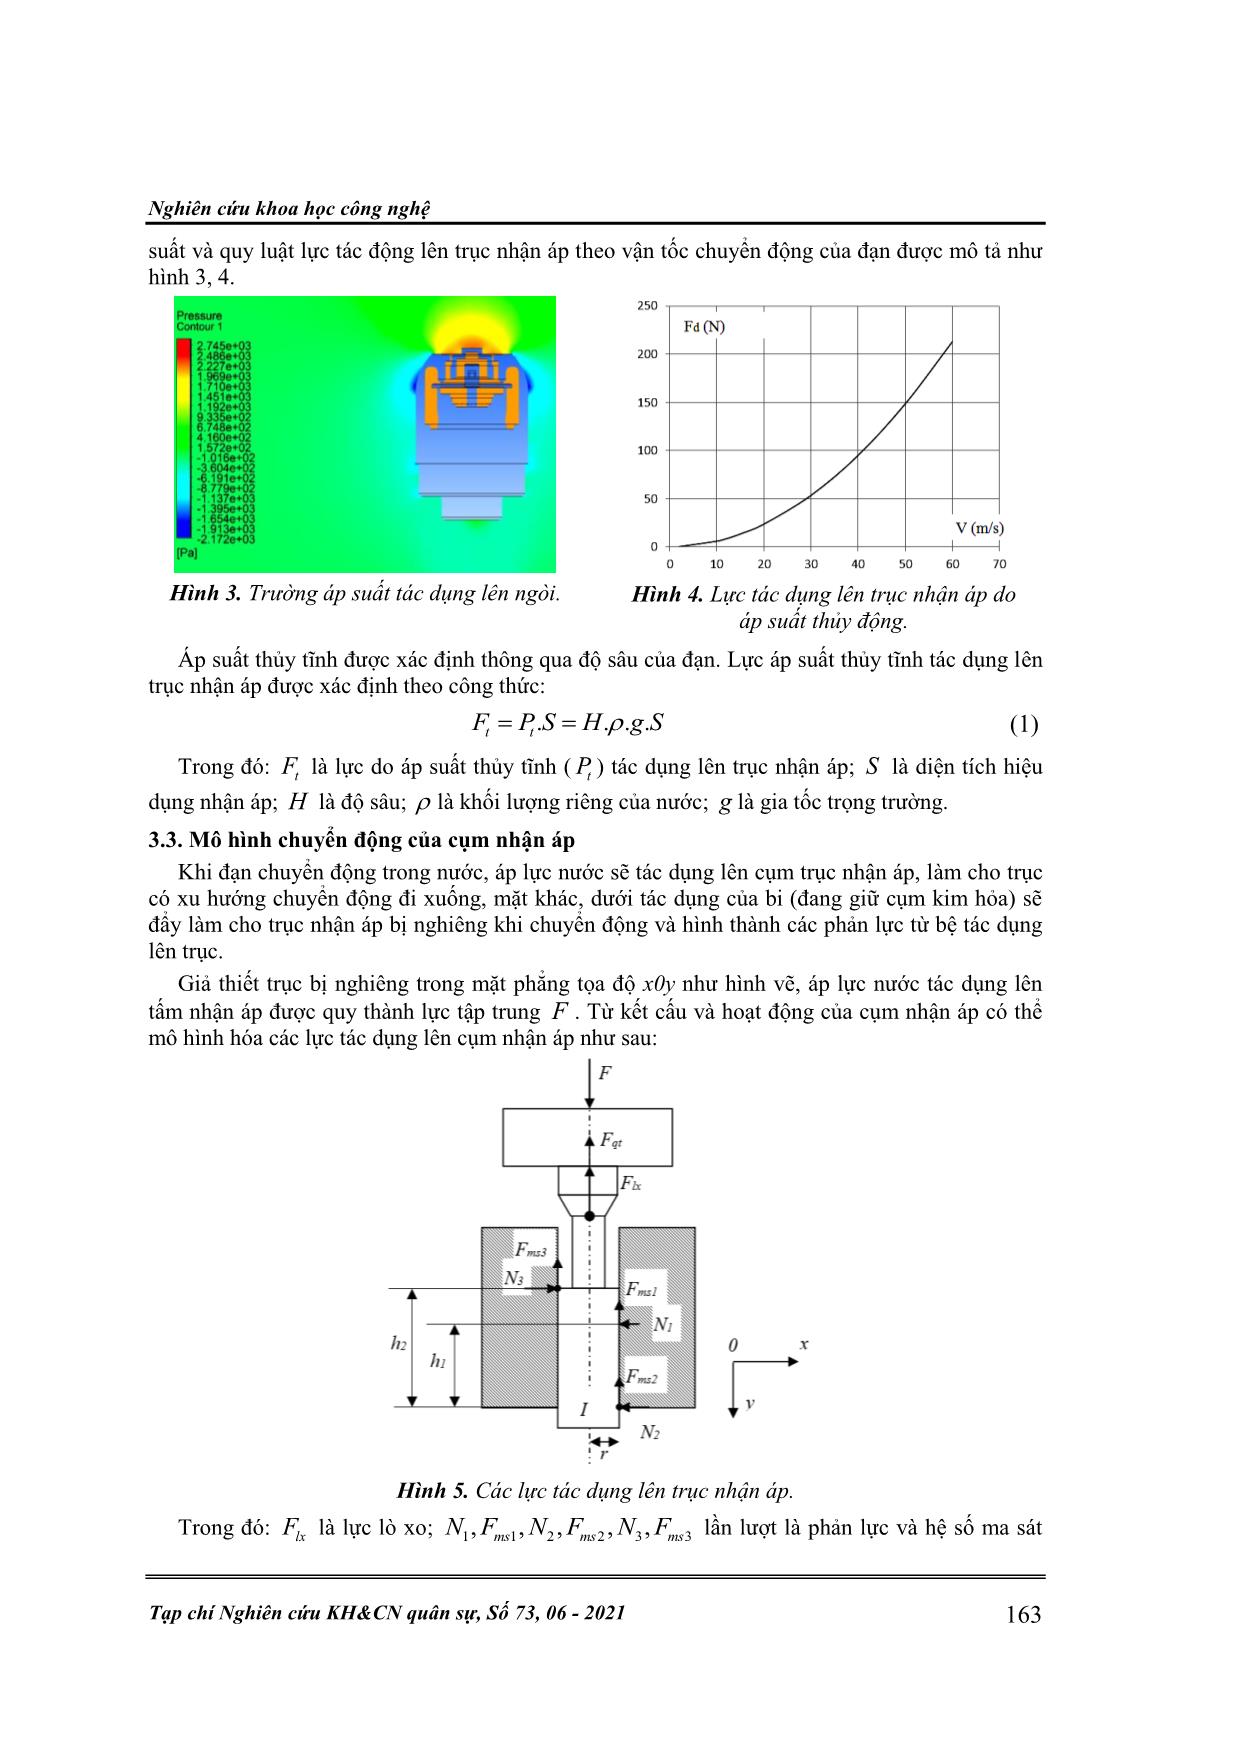 Đánh giá tác động của áp lực nước lên cơ cấu nhận áp ngòi thủy tĩnh khi đạn chuyển động trong nước trang 3